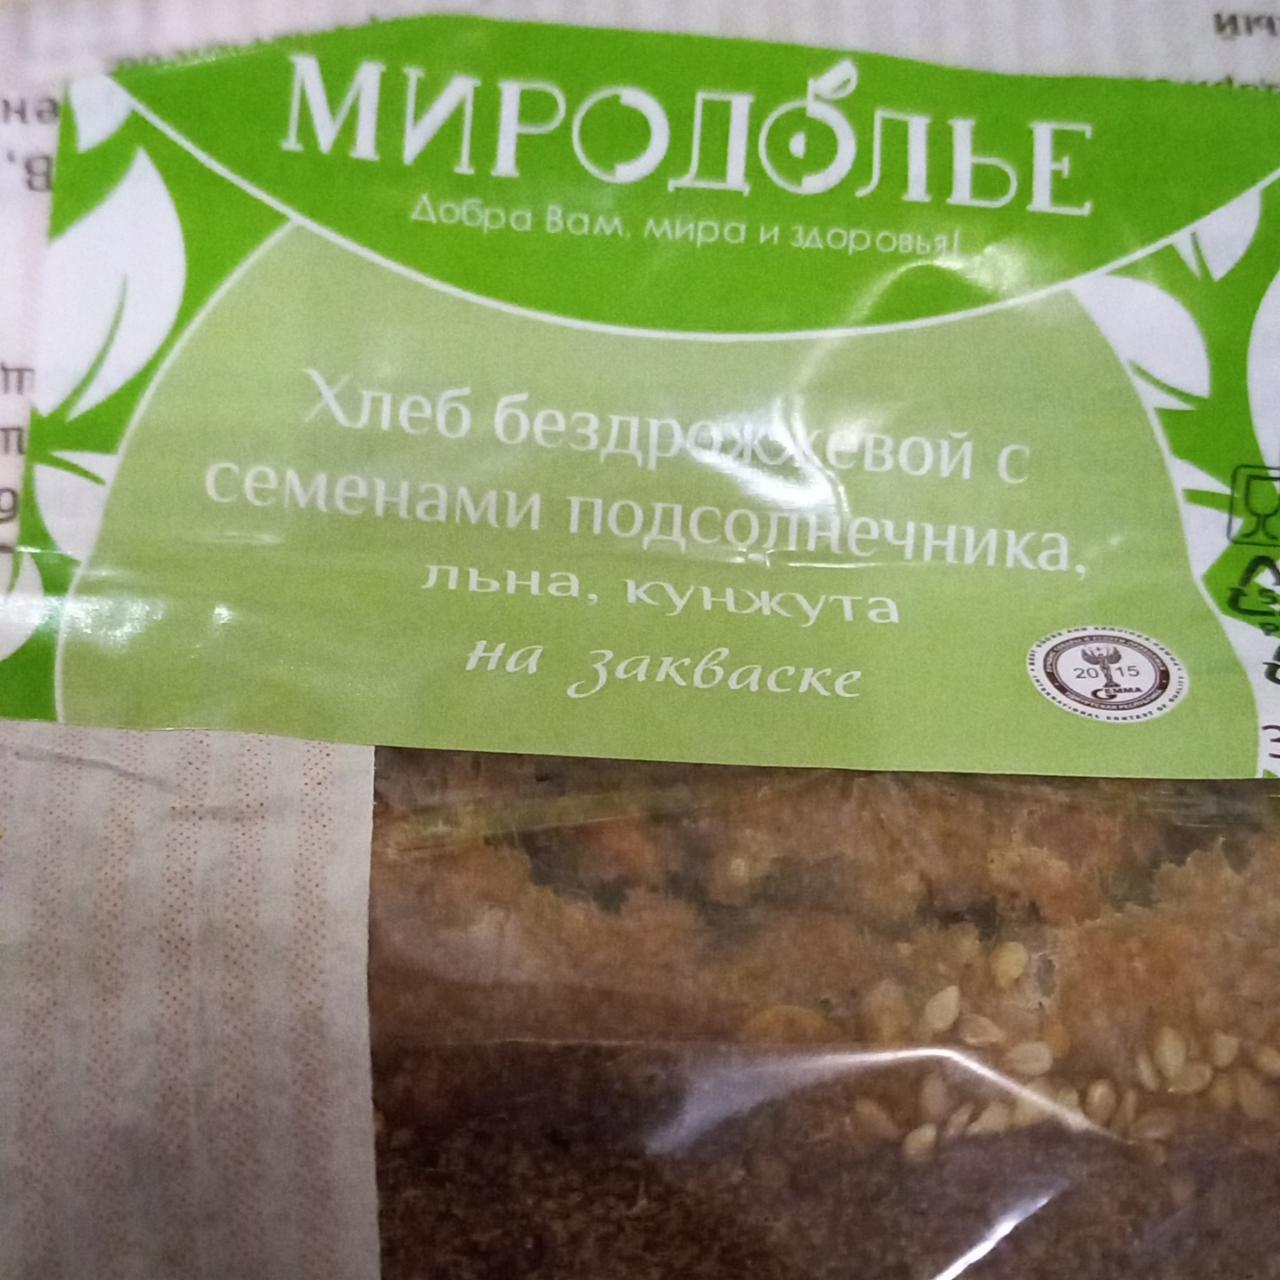 Фото - Хлеб бездрожжевой с семенами подсолнечника льна кунжута Миродолье